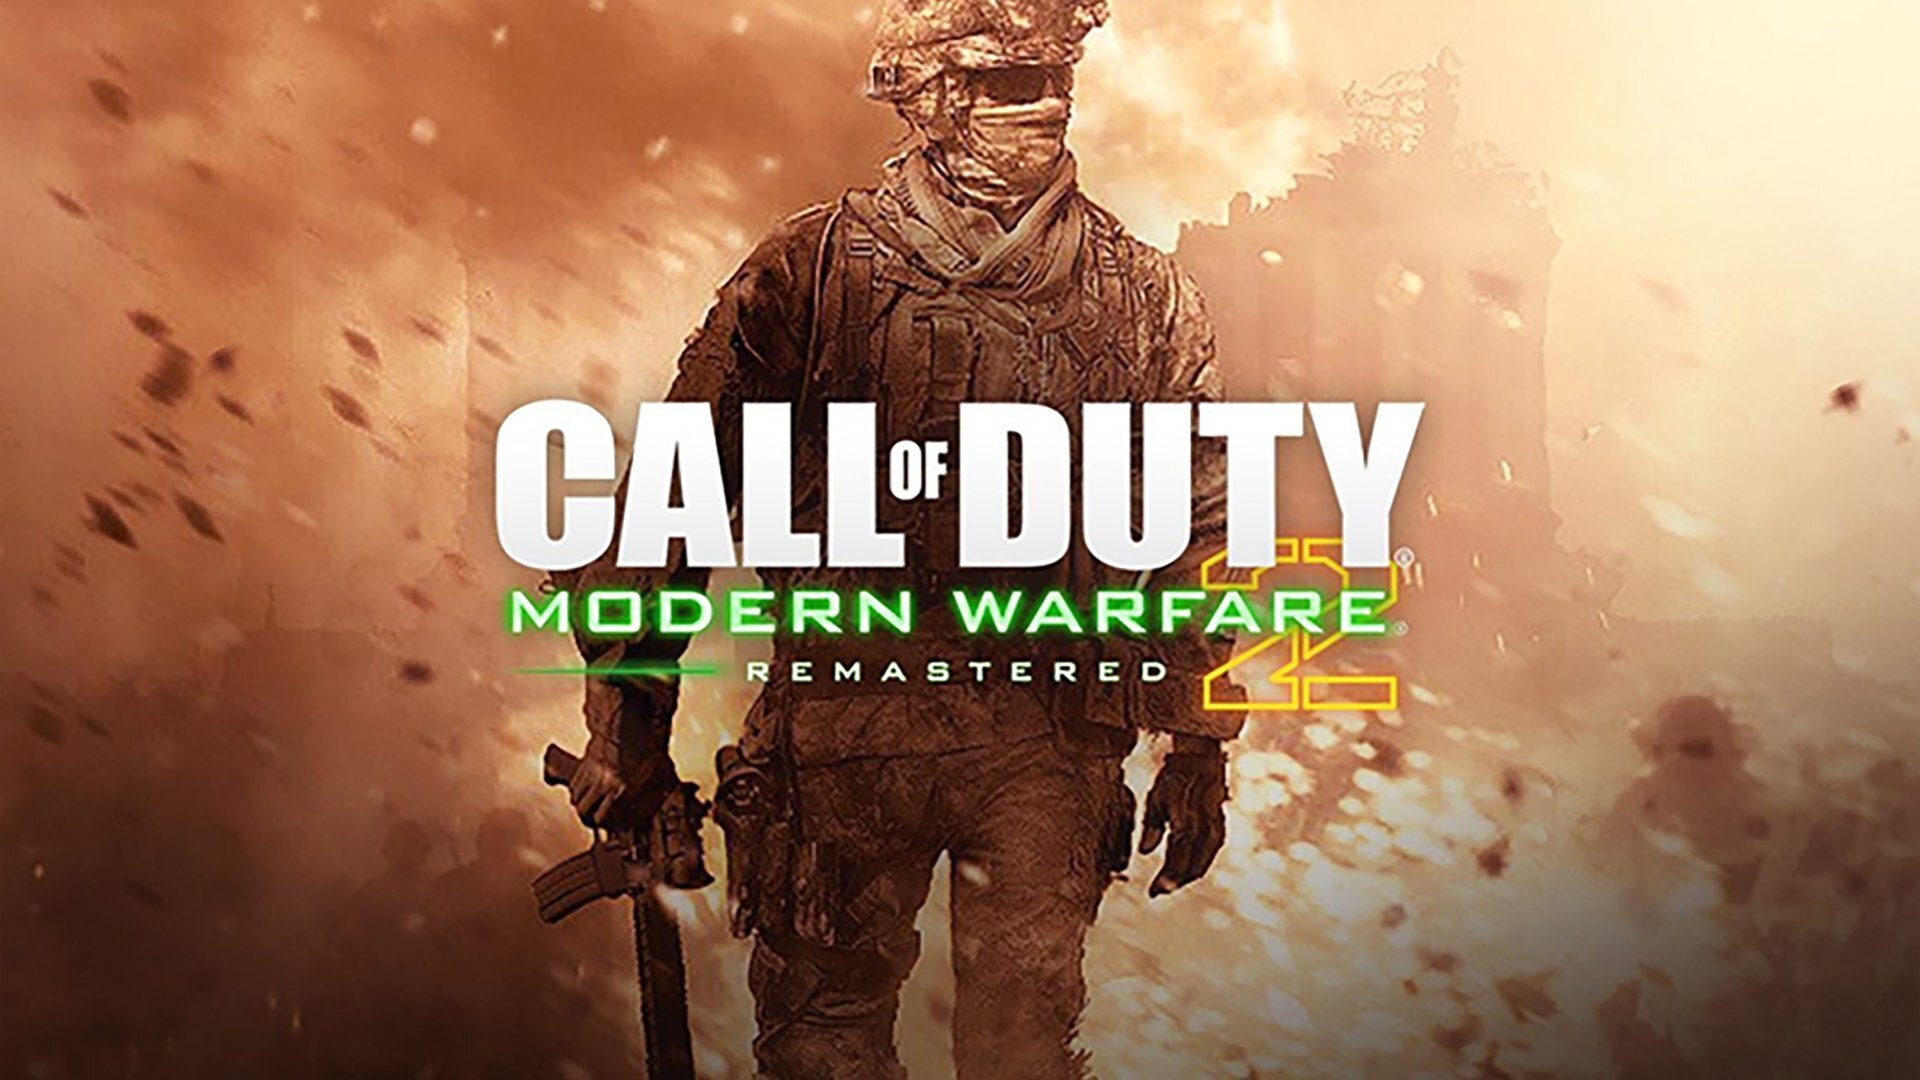 18+ Call of Duty: Modern Warfare 2 - 6 СЕРИЯ ЧУМОВОГО ШУТЕРА от первого лица, приятного просмотра!!!